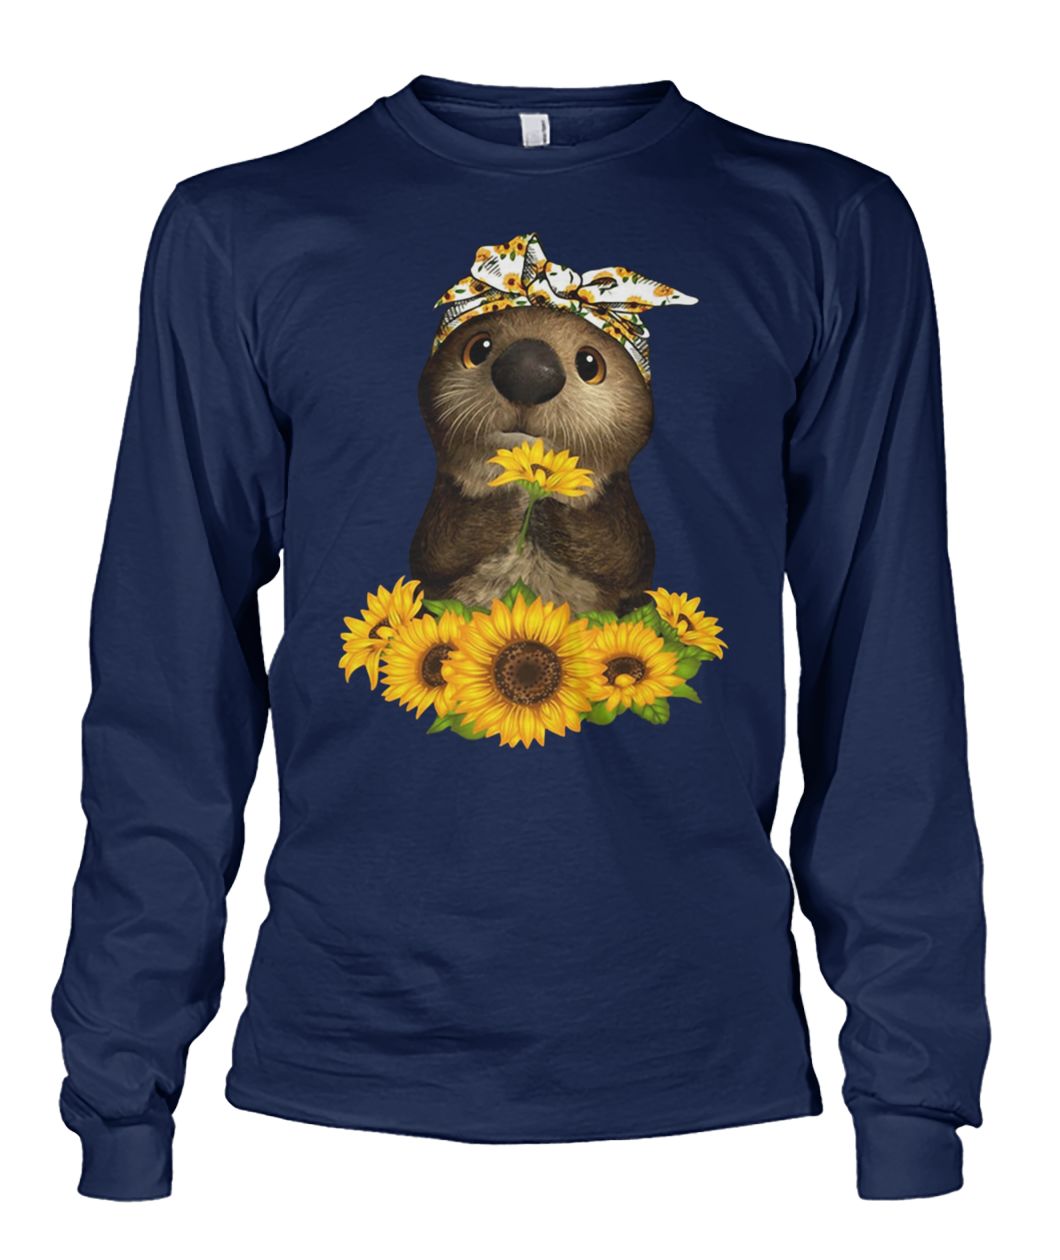 Sunflower otter unisex long sleeve